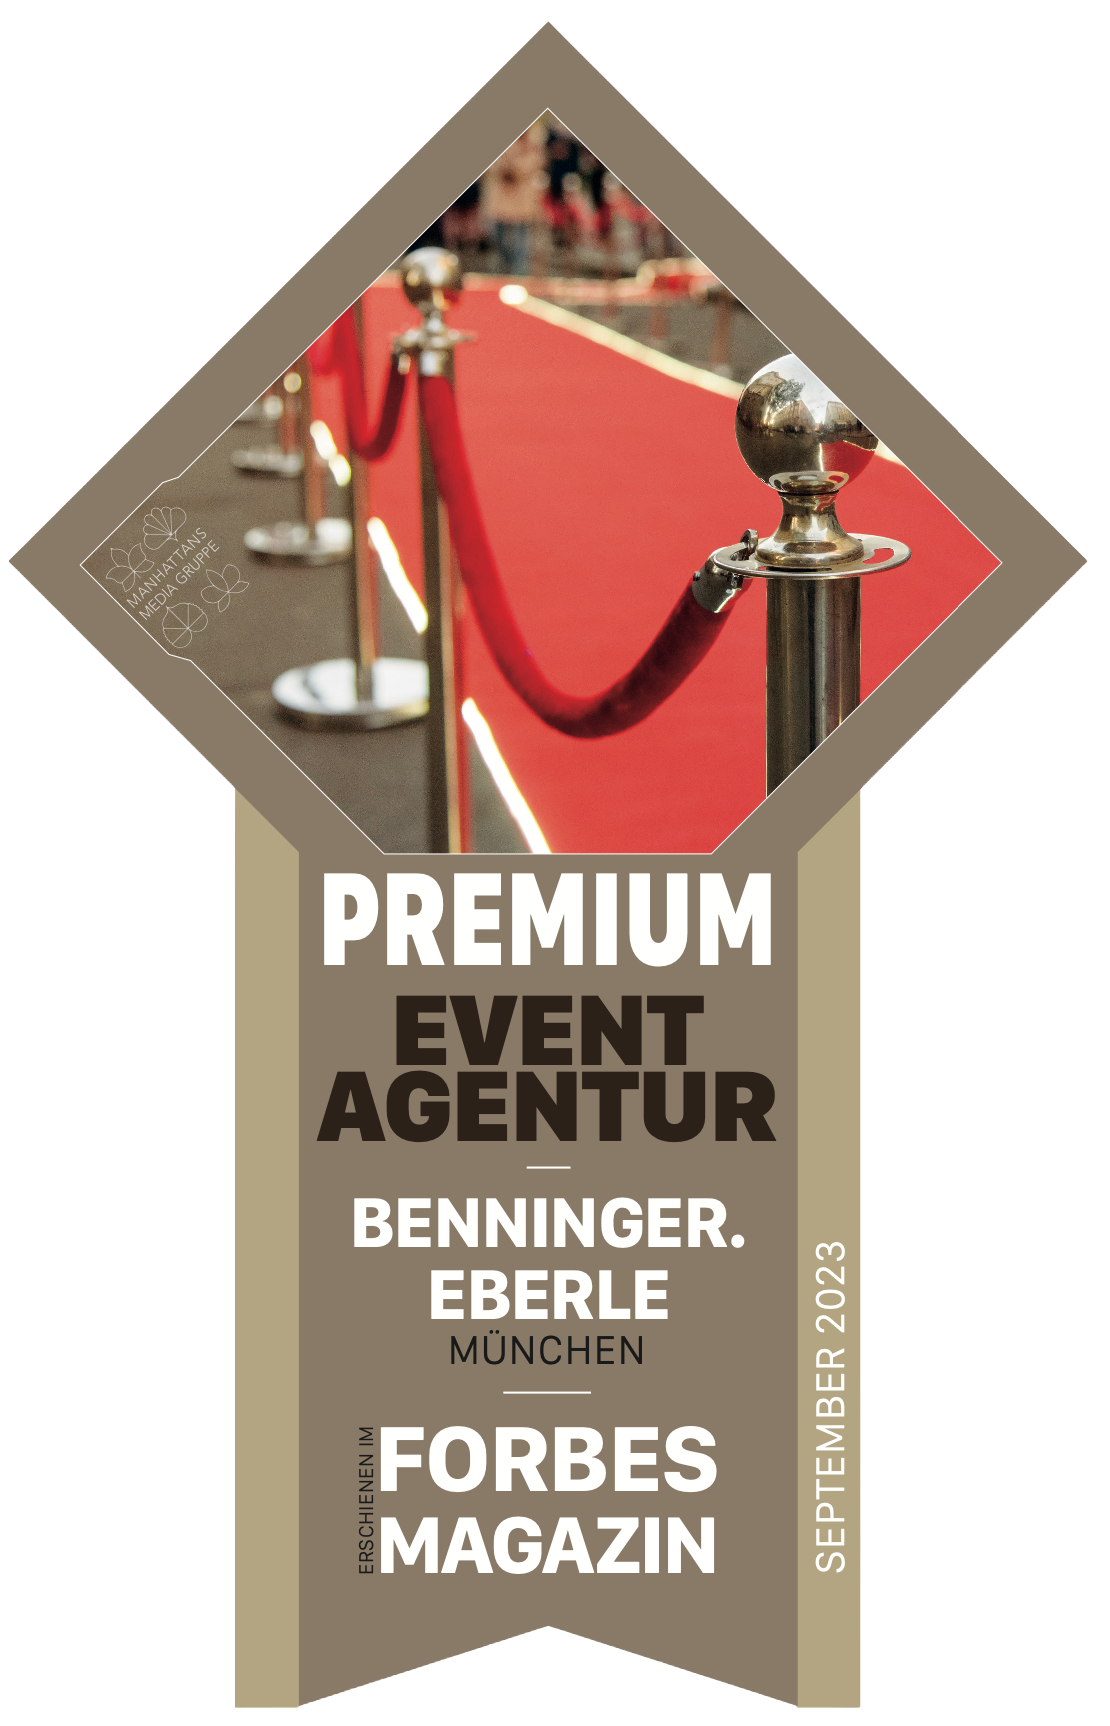 Benninger eberle Eventagentur München ist Premium Eventagentur